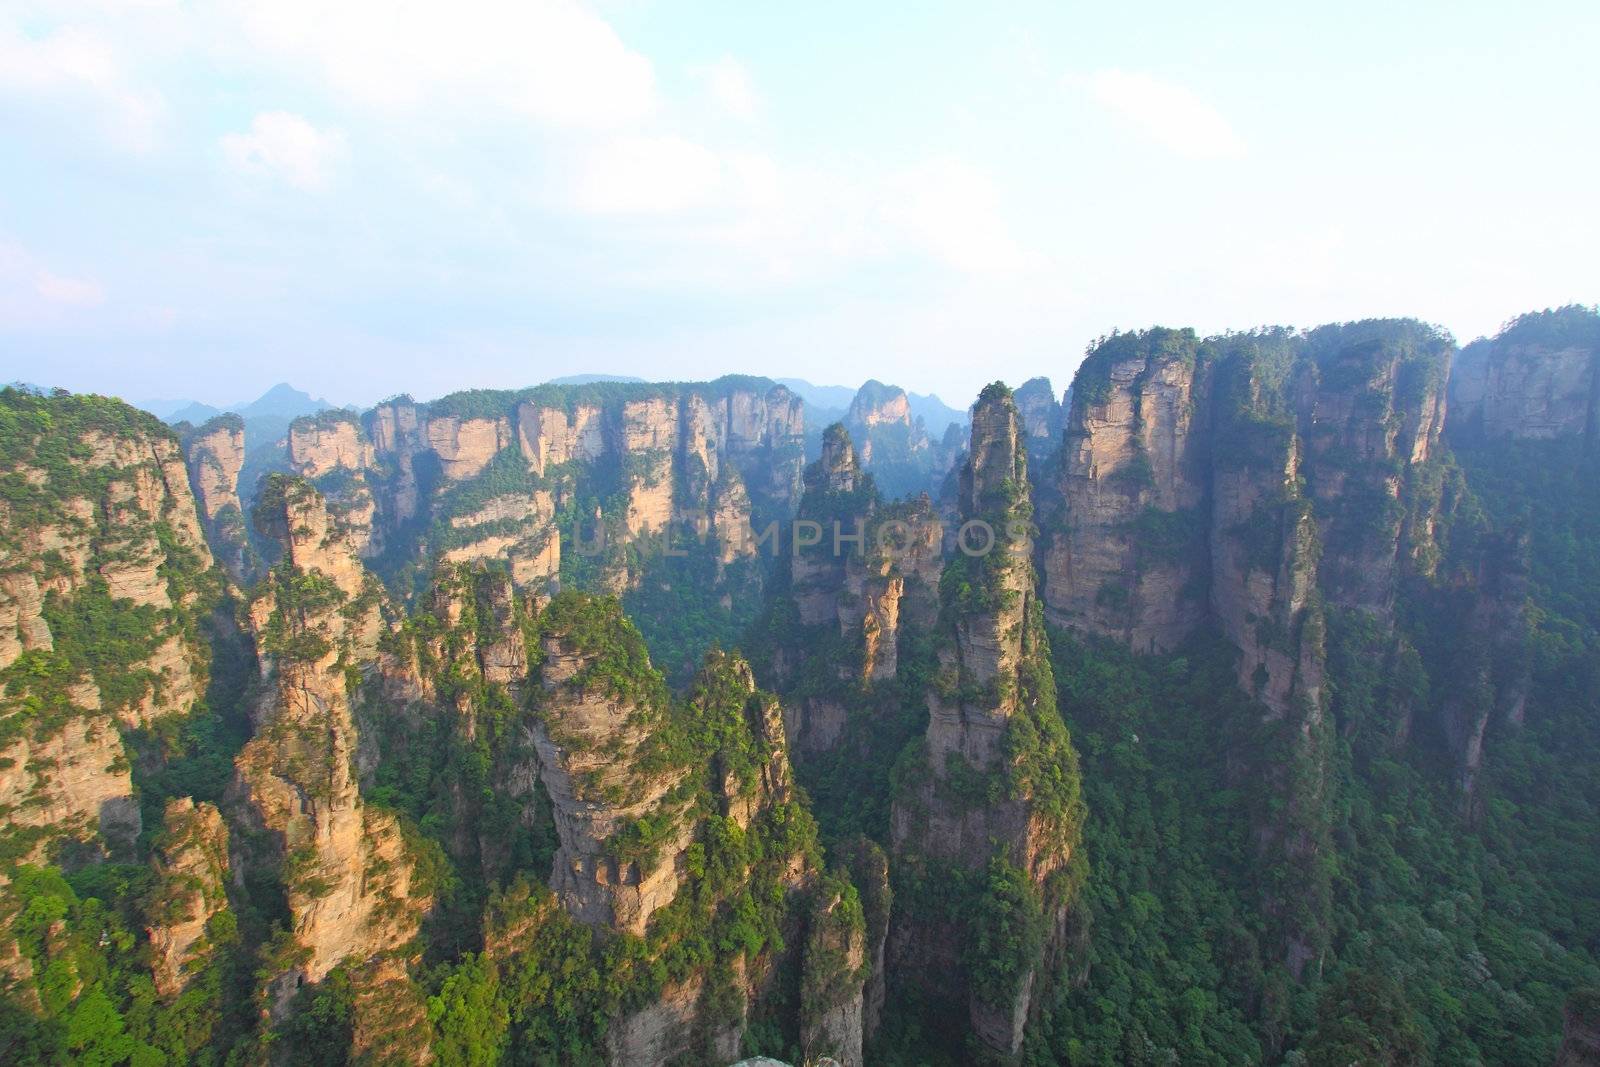 Mountain landscape of Zhangjiajie in China